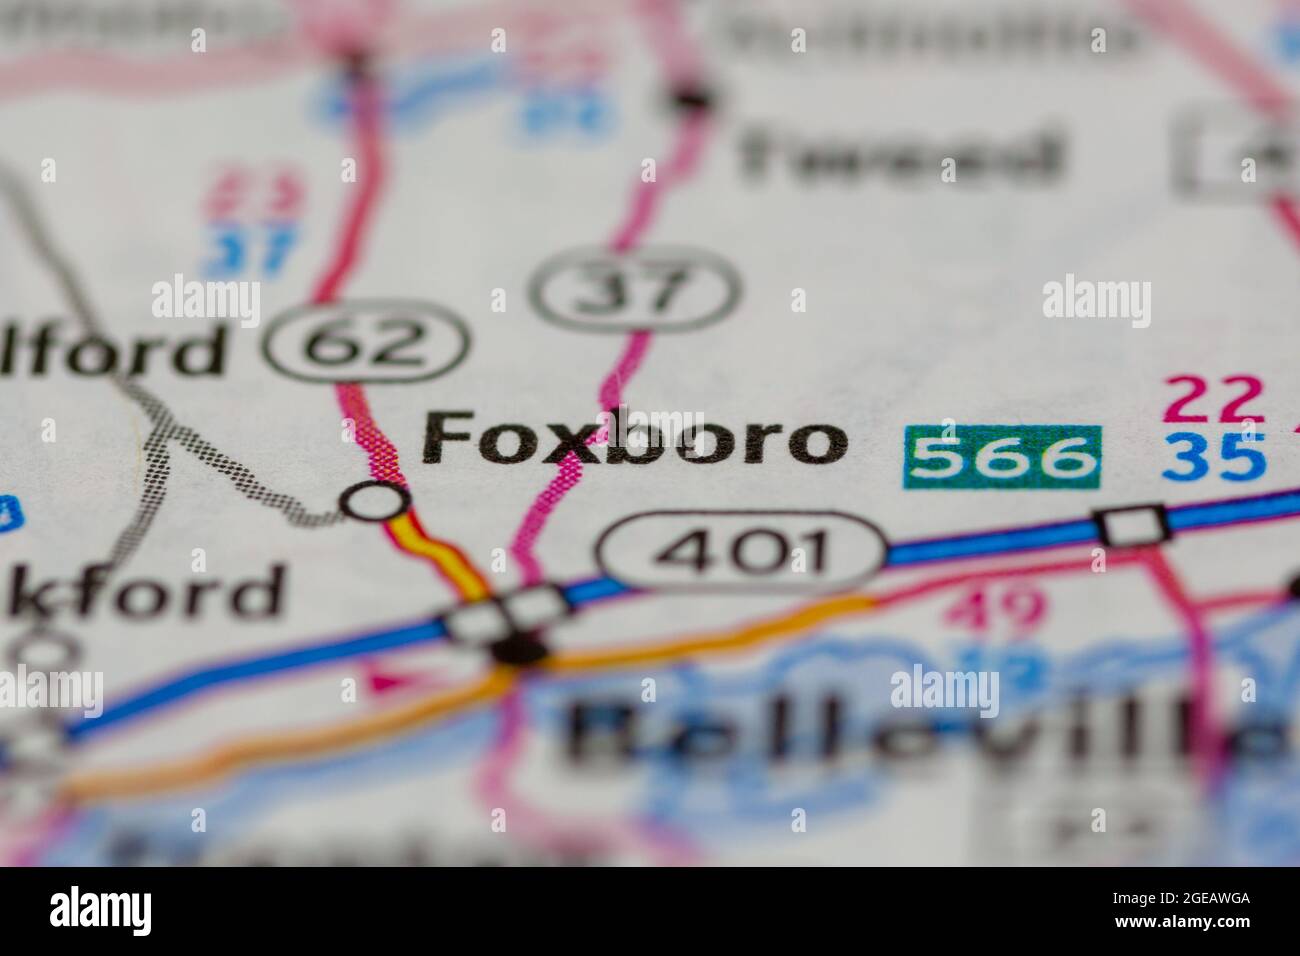 Foxboro Ontario Canada mostrato su una mappa stradale o mappa geografica Foto Stock